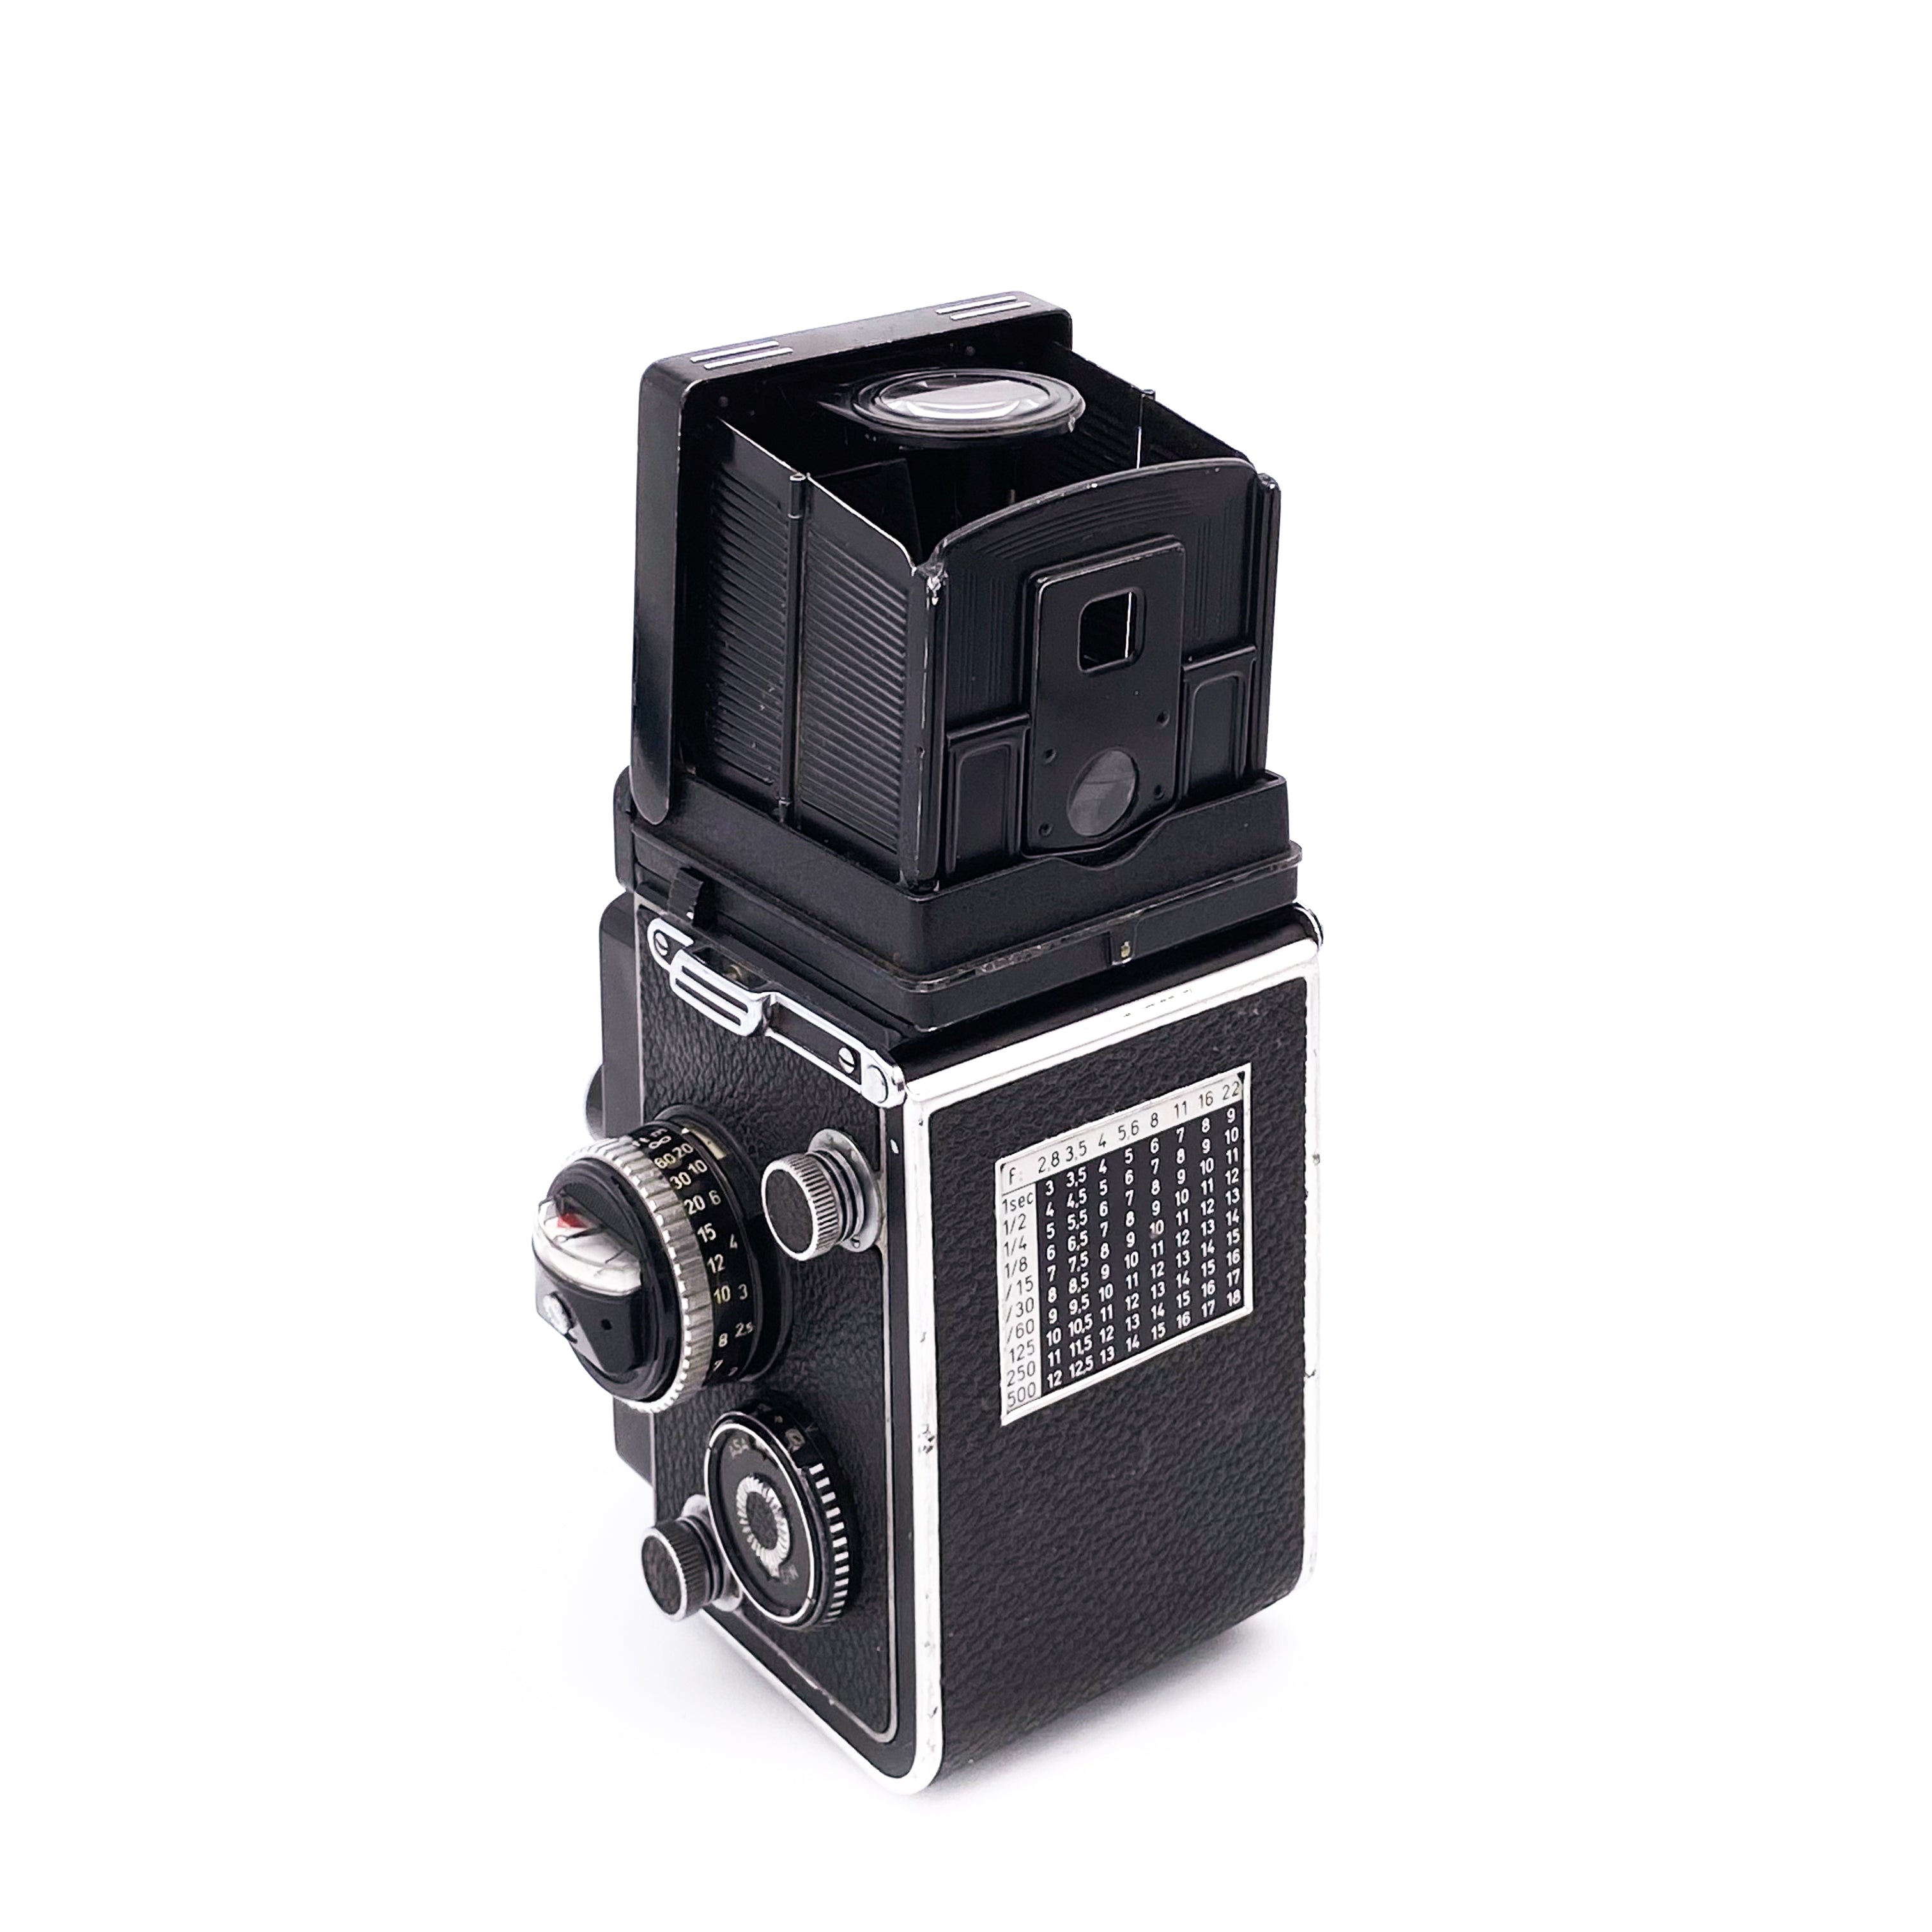 ROLLEIFLEX 2.8F TLR Film Camera with Planar 80mm f/2.8